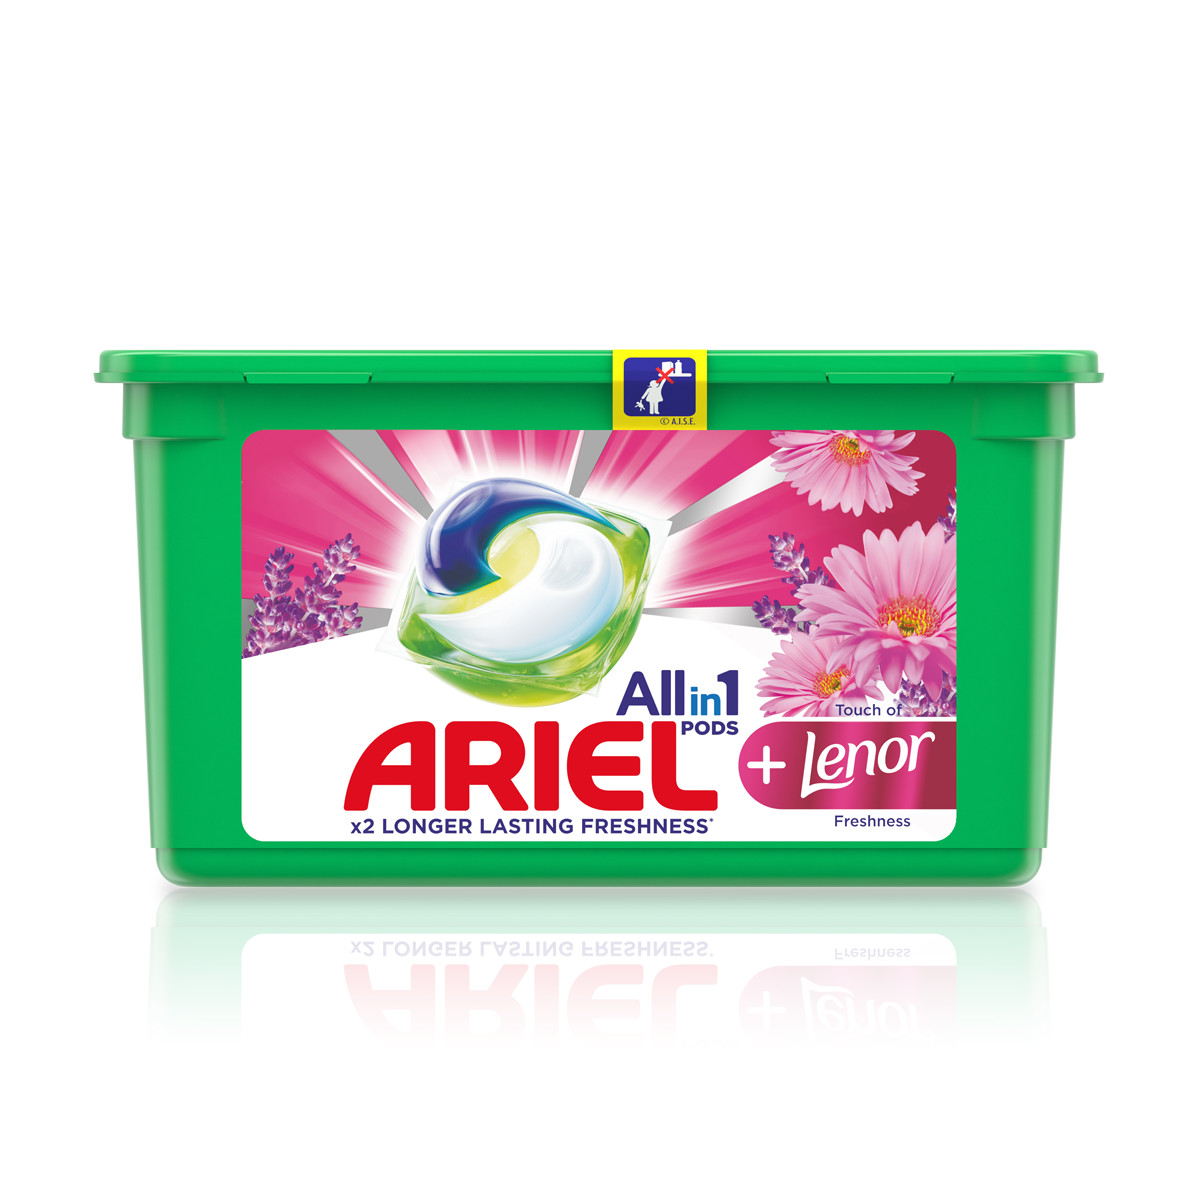 PDP - UK - Ariel All-in-1 PODS® + Lenor Freshness